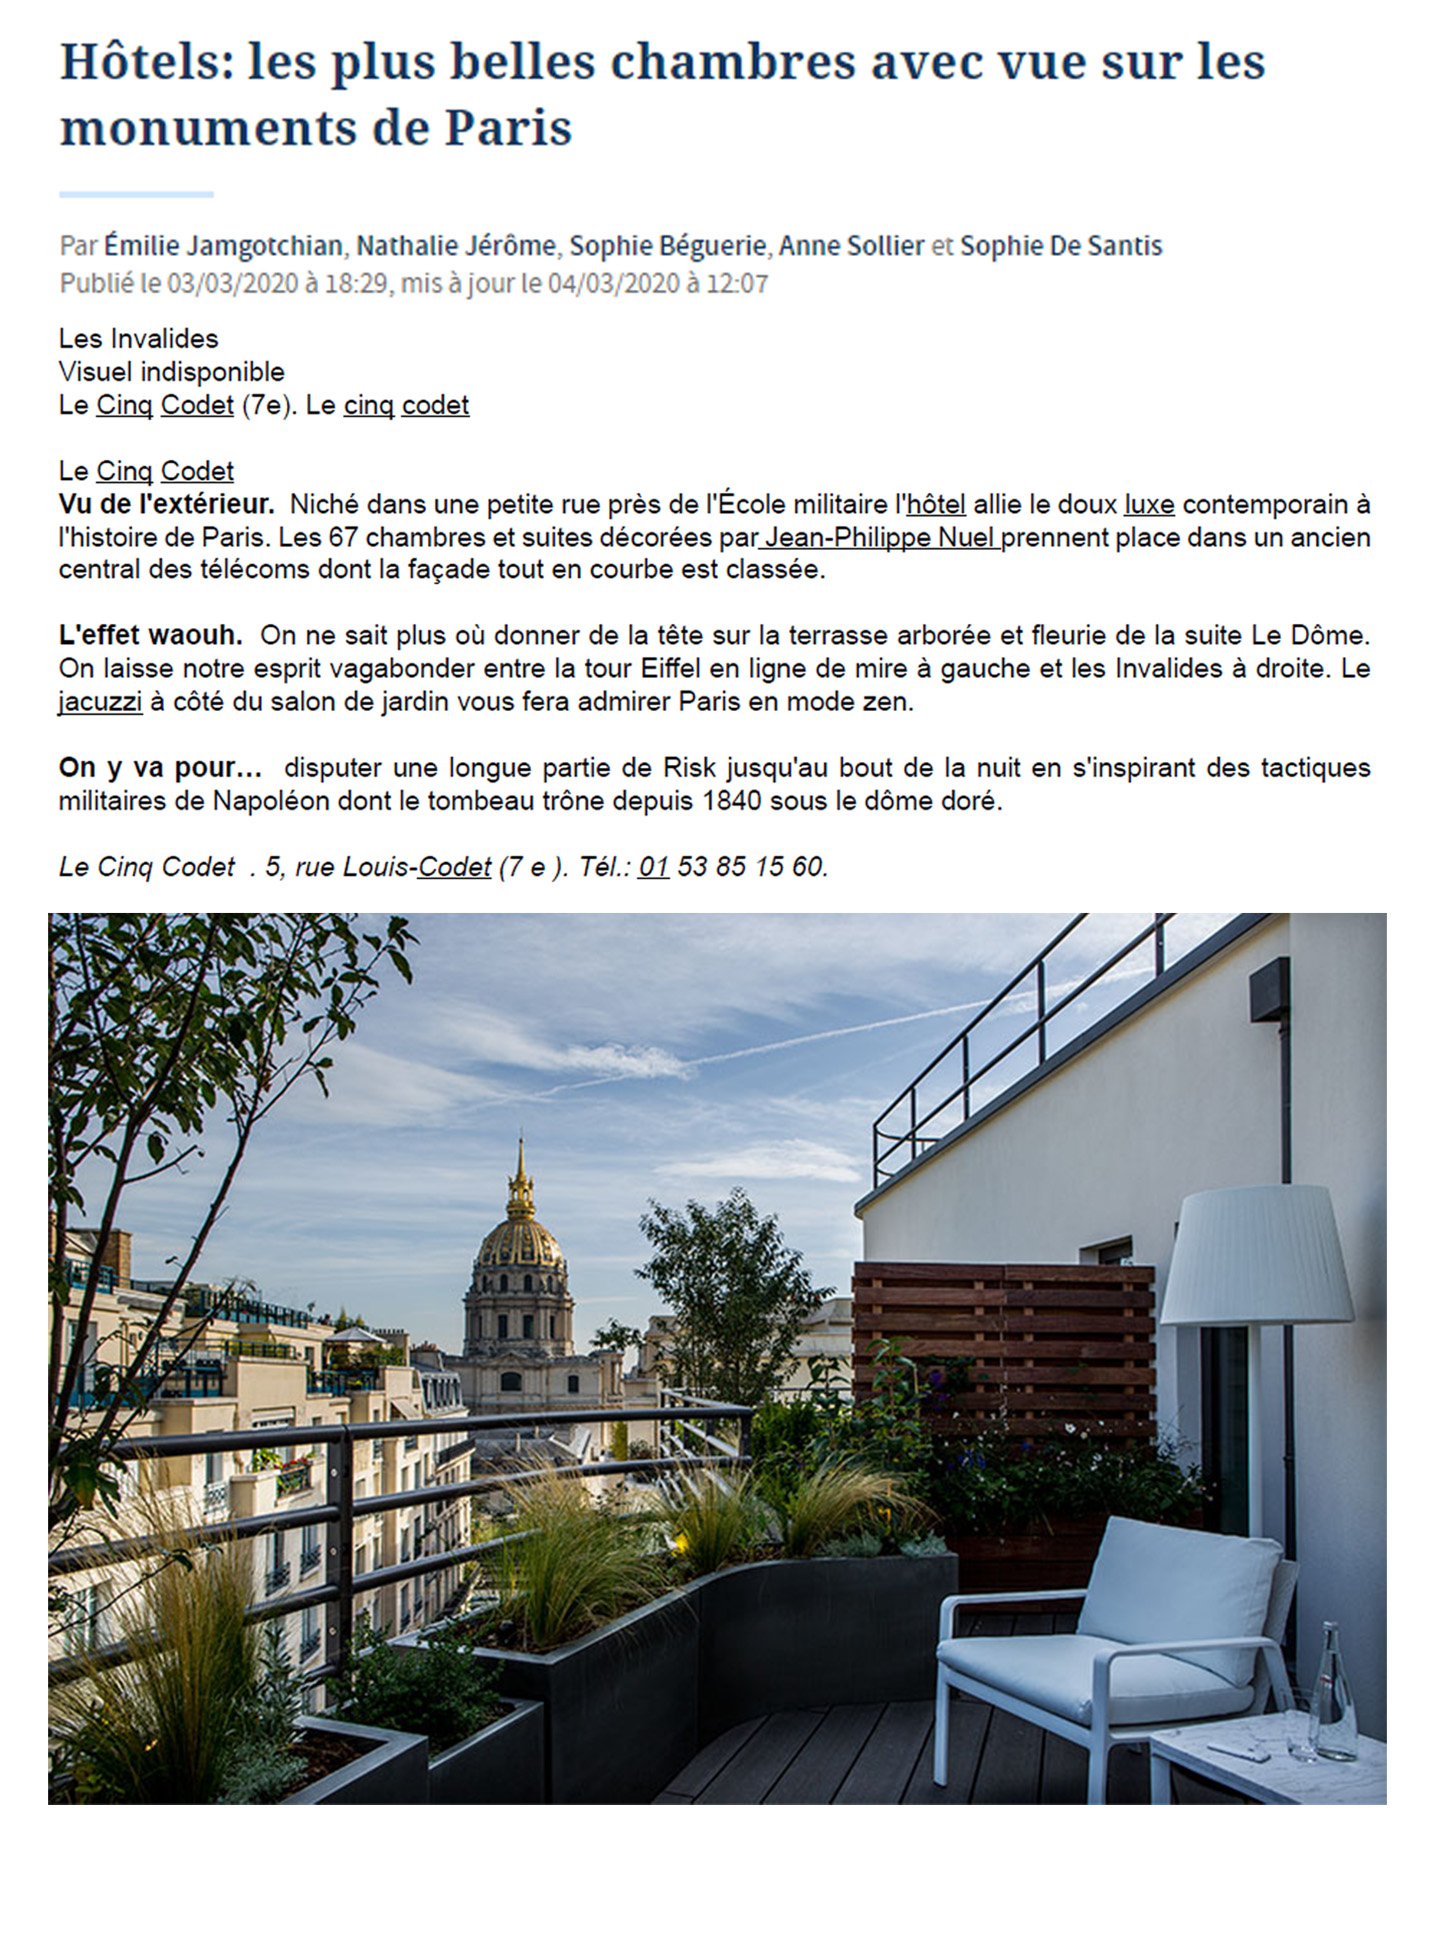 article sur l'hôtel le cinq codet paris, hotel de luxe avec vue imprenable sur les monuments de paris rénové par l'architecte et décorateur d'intérieur jean-philippe nuel